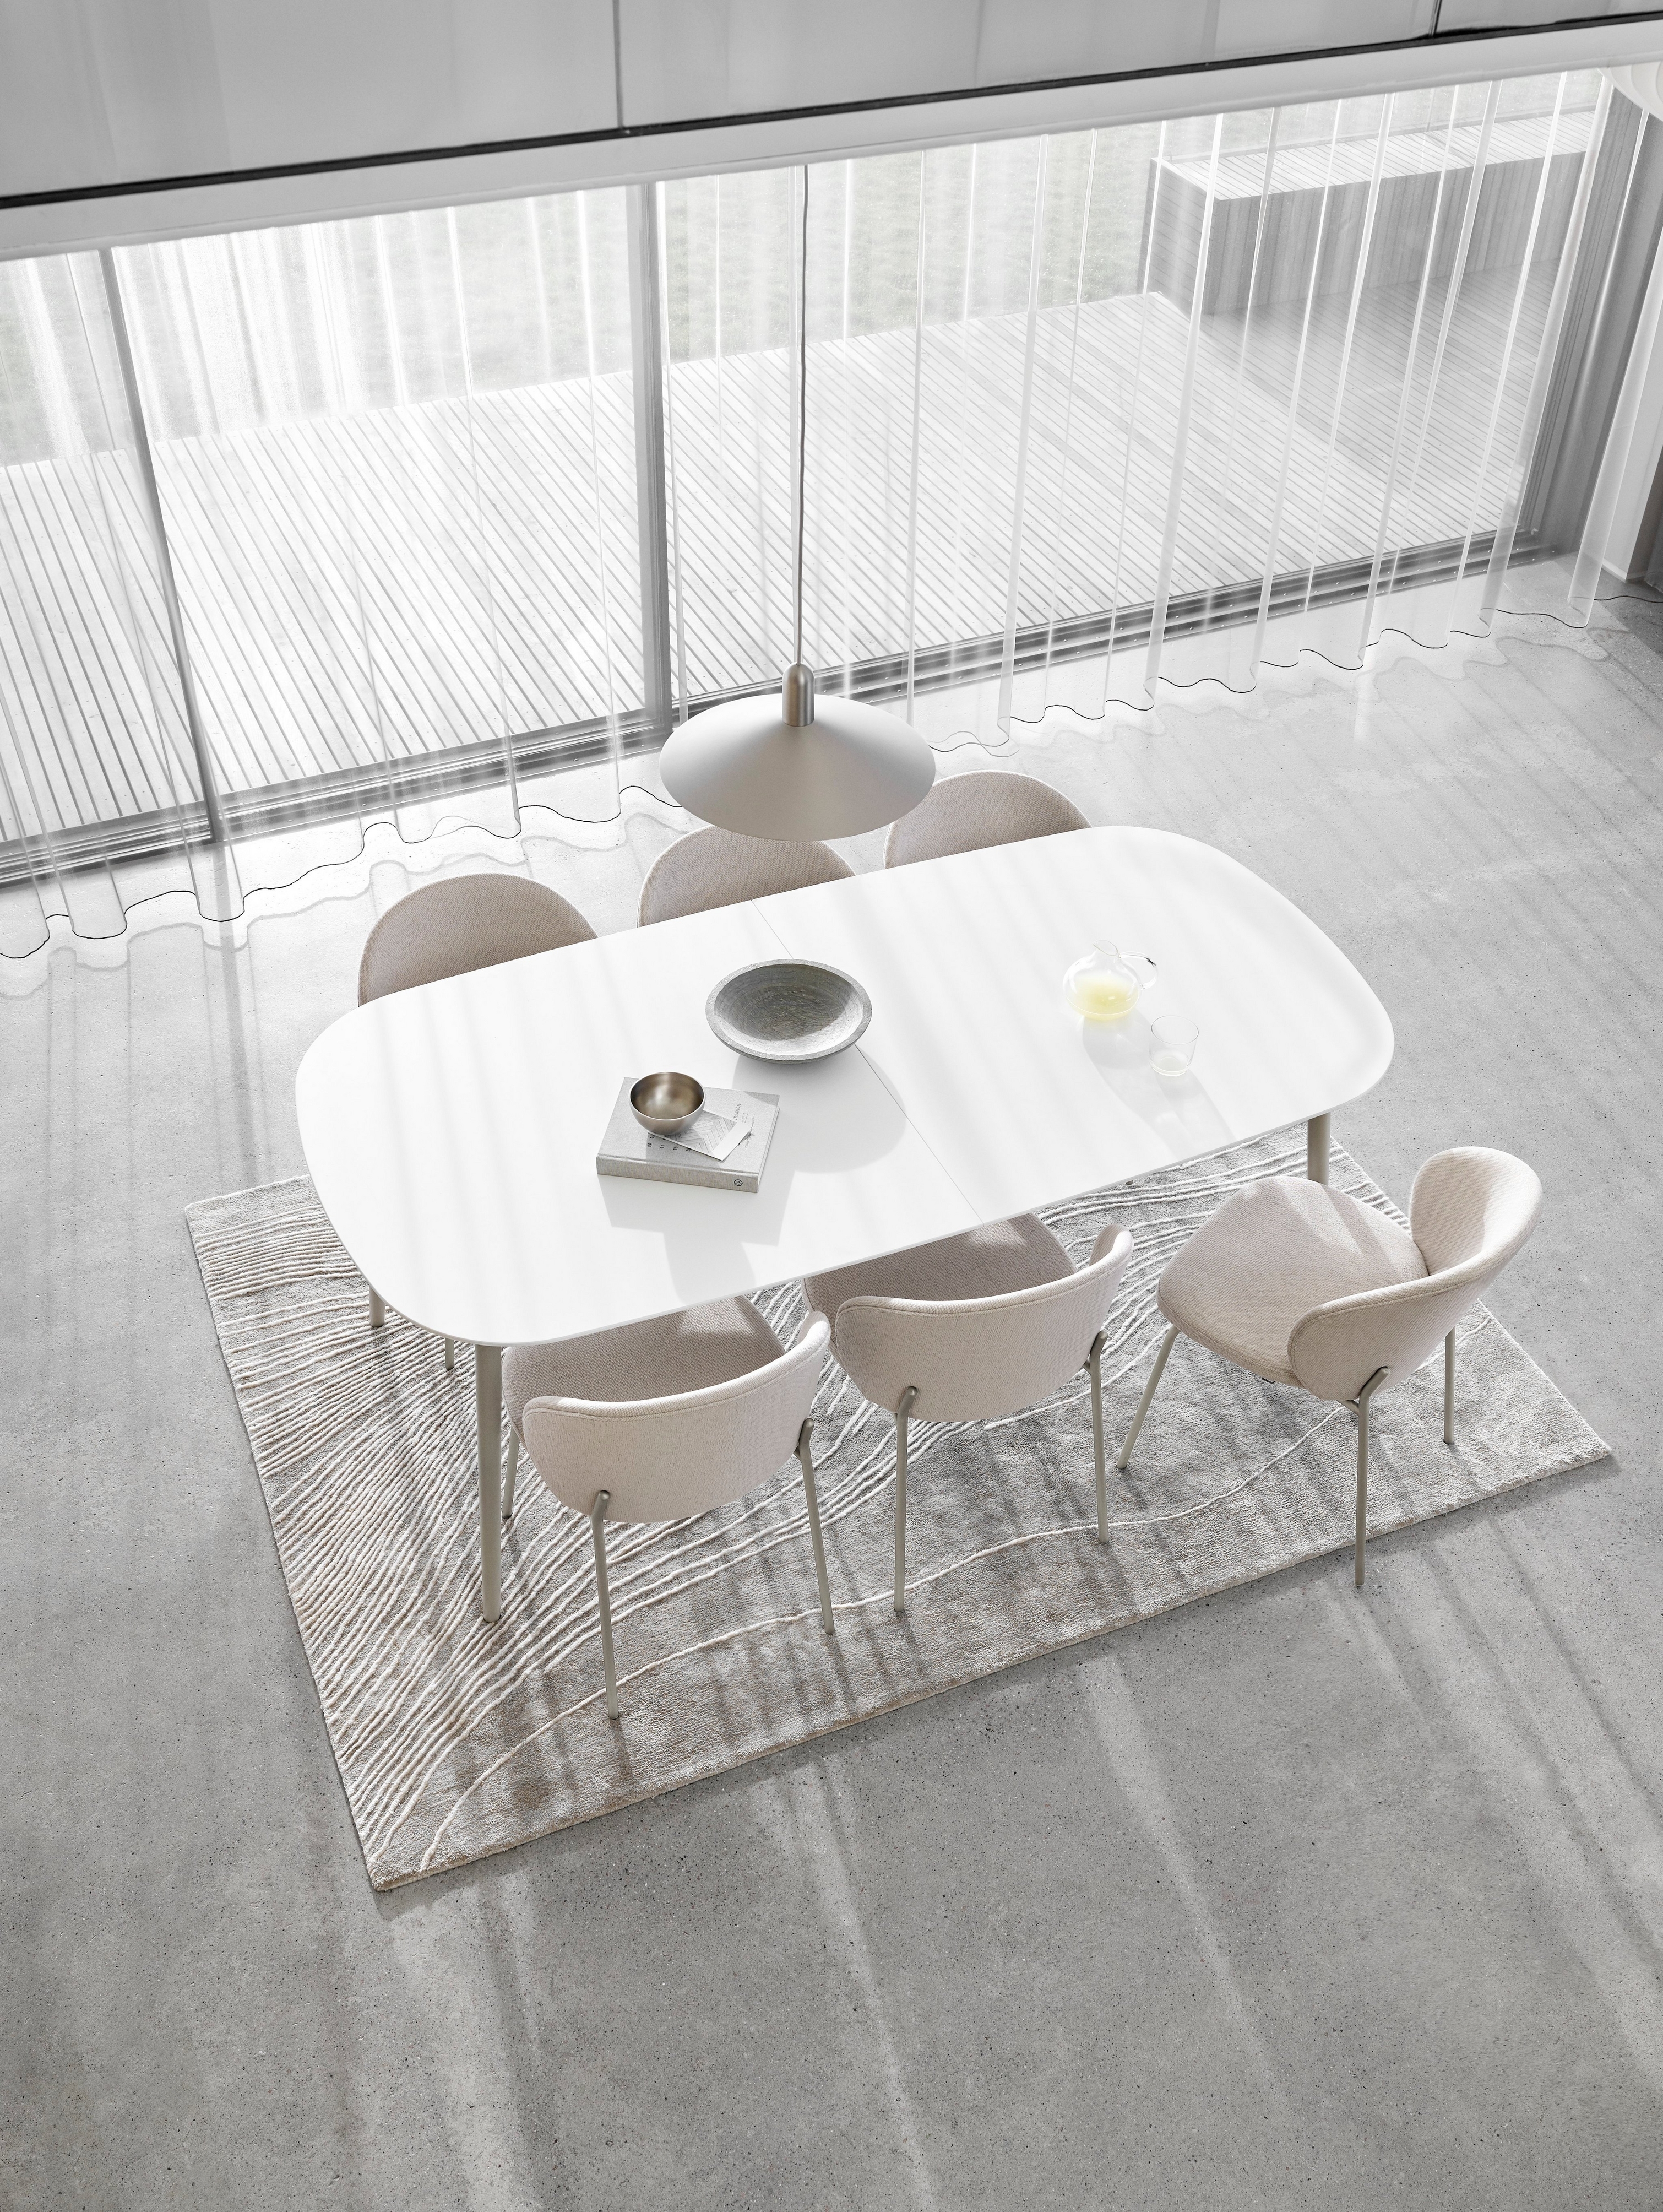 Minimalistisches Esszimmer mit weißem, ovalem Tisch, Stühlen, transparenten Vorhängen und strukturiertem Teppich.